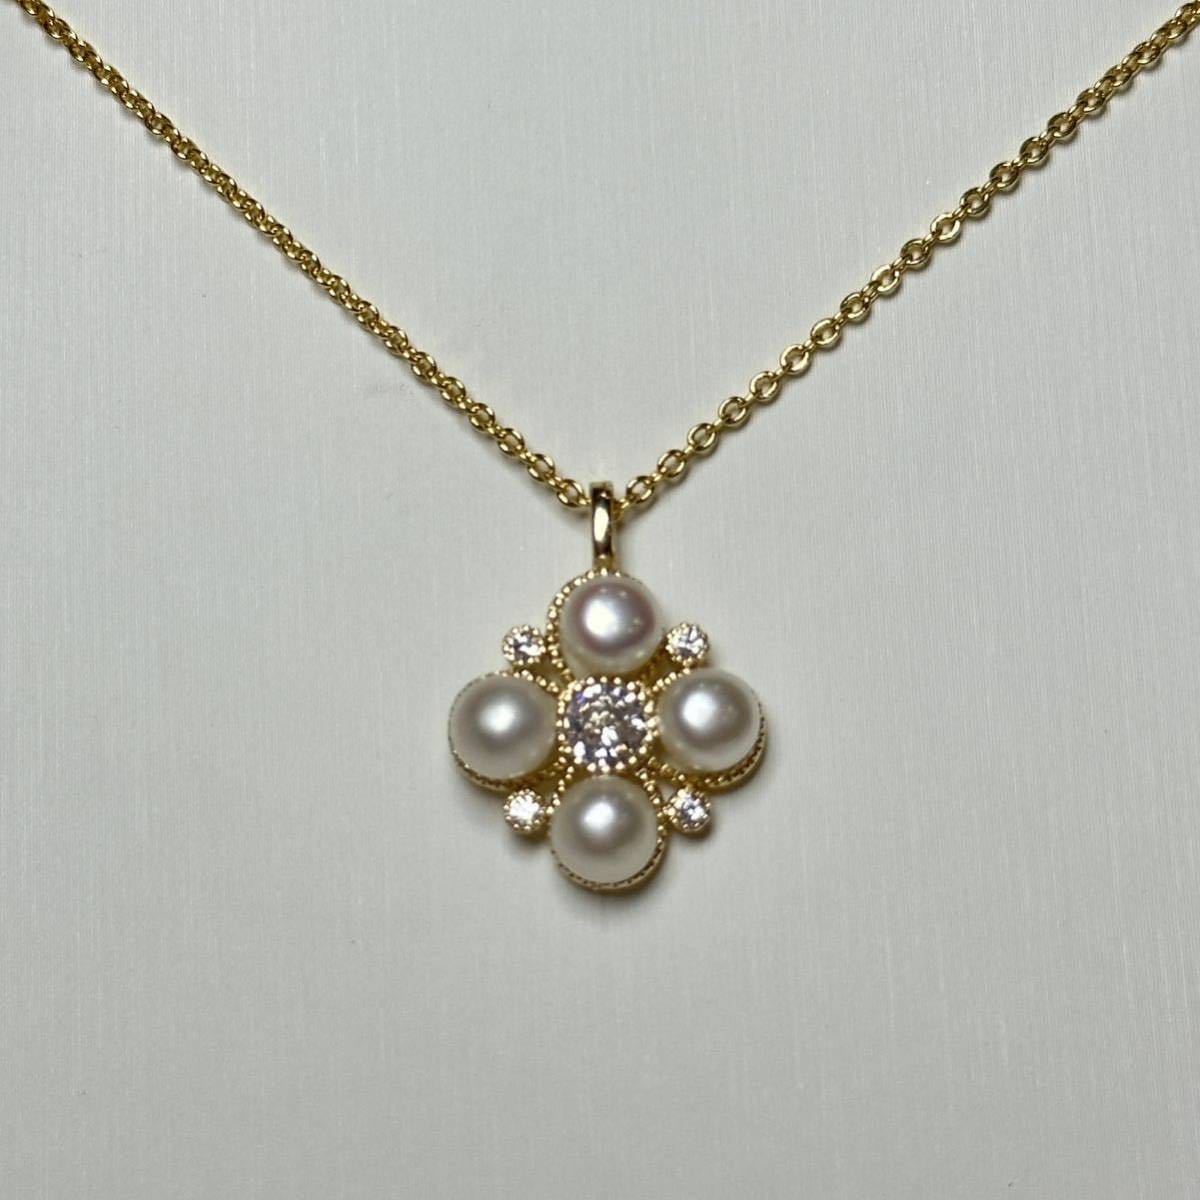 「花珠級本真珠ネックレス5mm 42cm 」天然パールネックレスの画像2